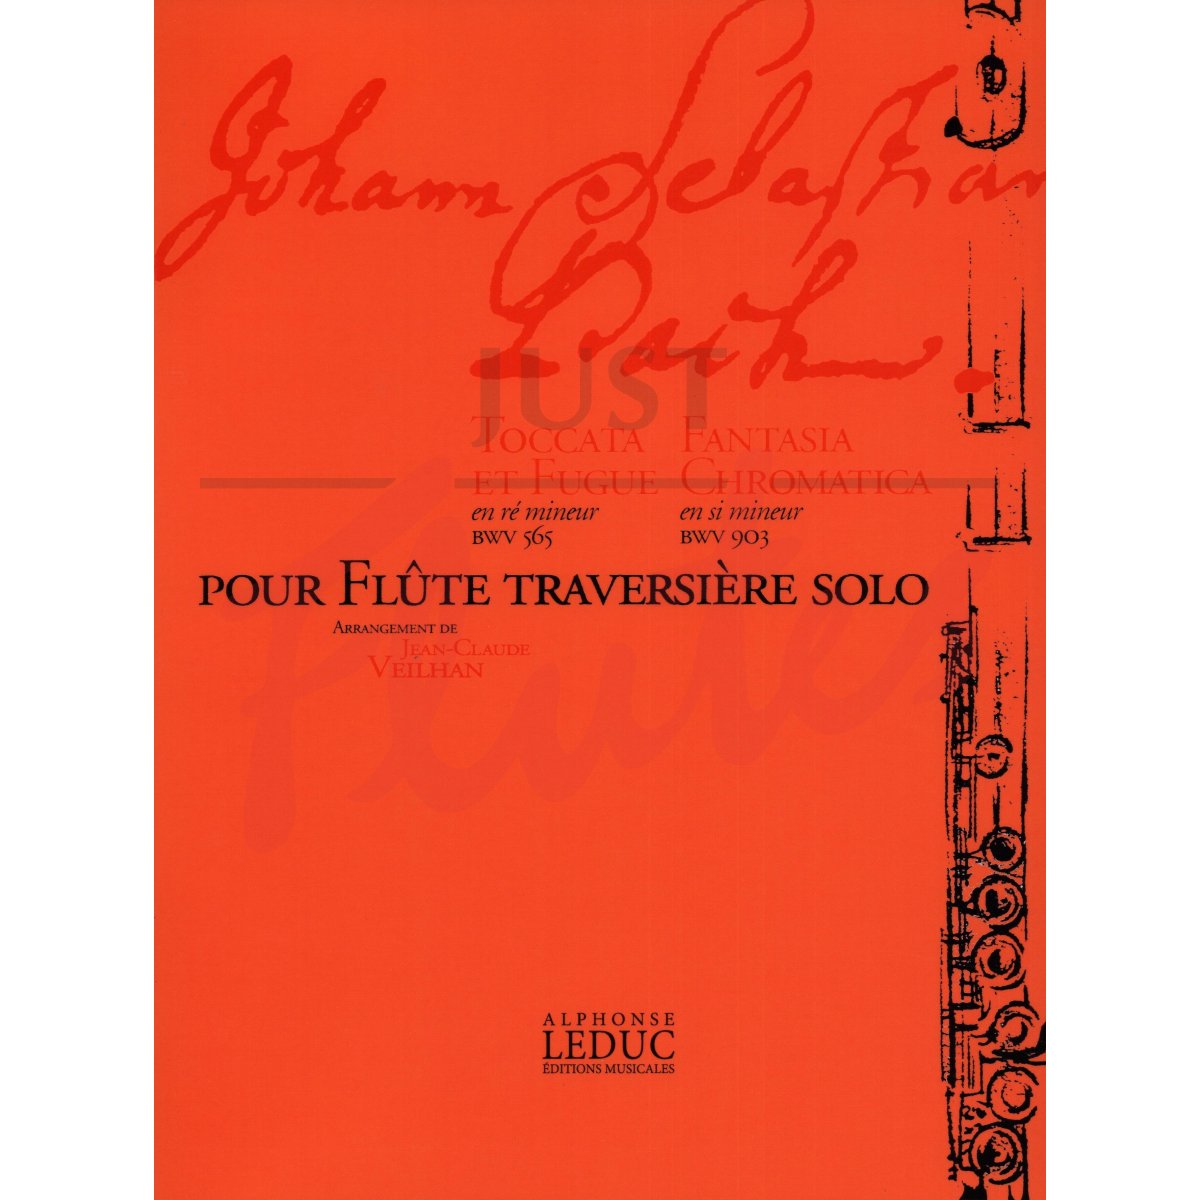 Toccata and Fugue in D minor BWV565 &amp; Fantasia Chromatica in B minor BWV903 for Solo Flute